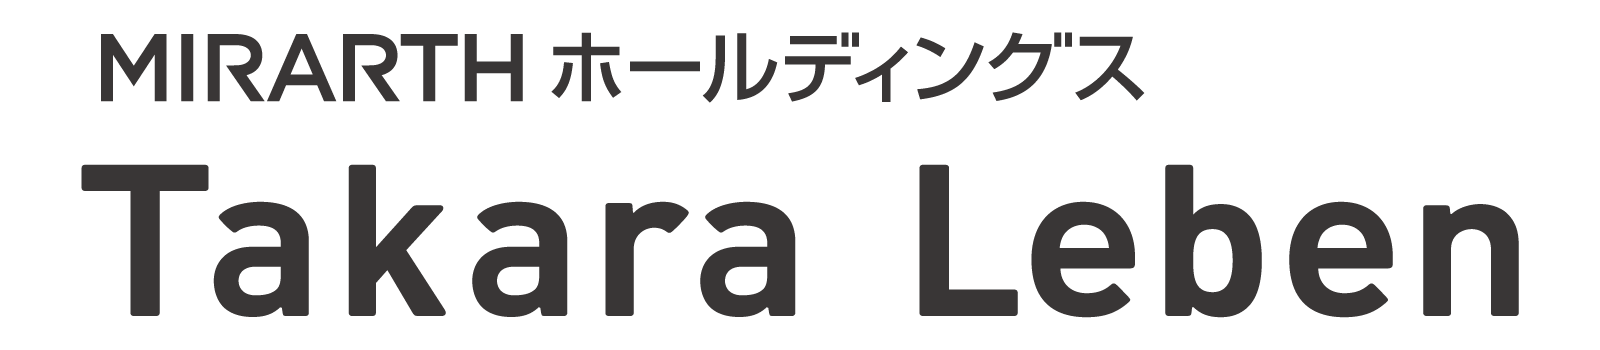 Takara Leben